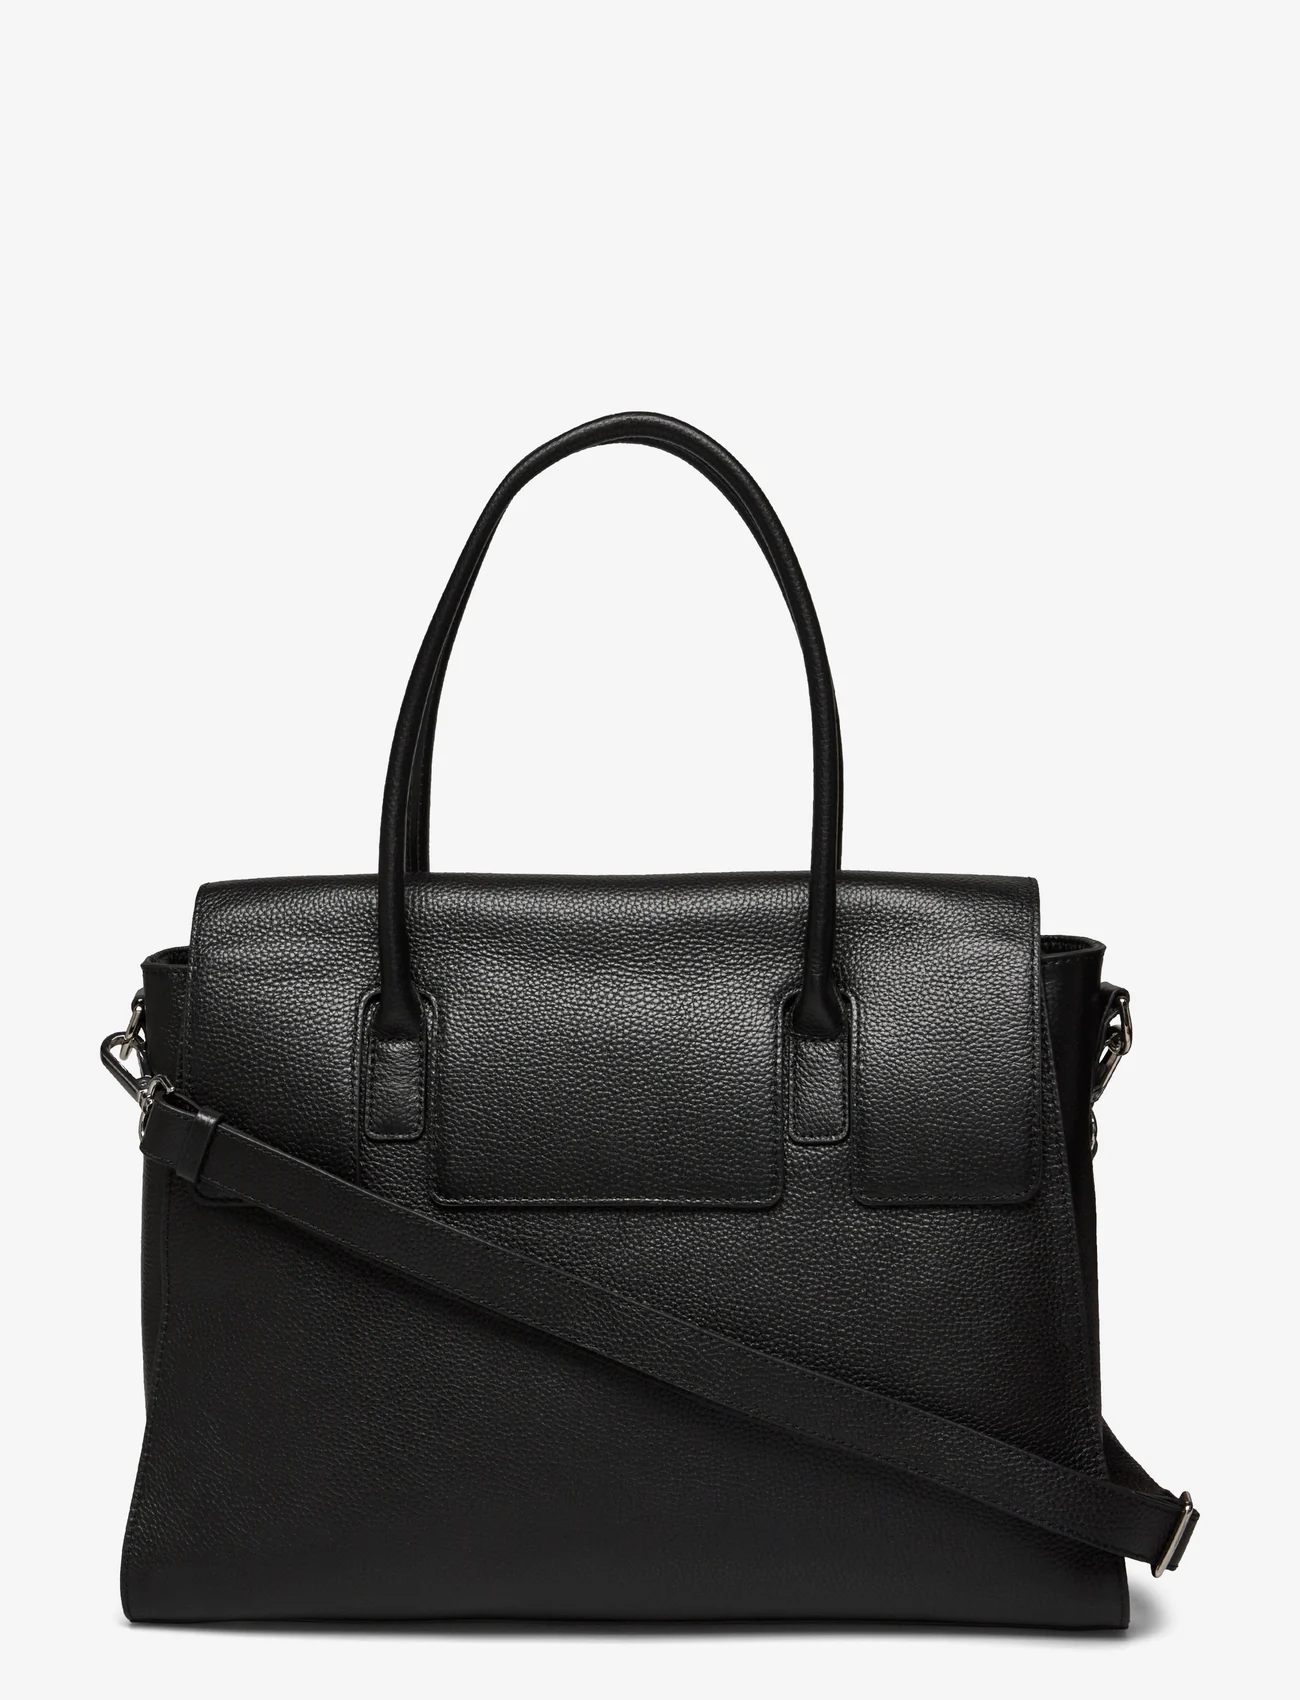 Rosemunde - Taurus working bag - odzież imprezowa w cenach outletowych - black silver - 0